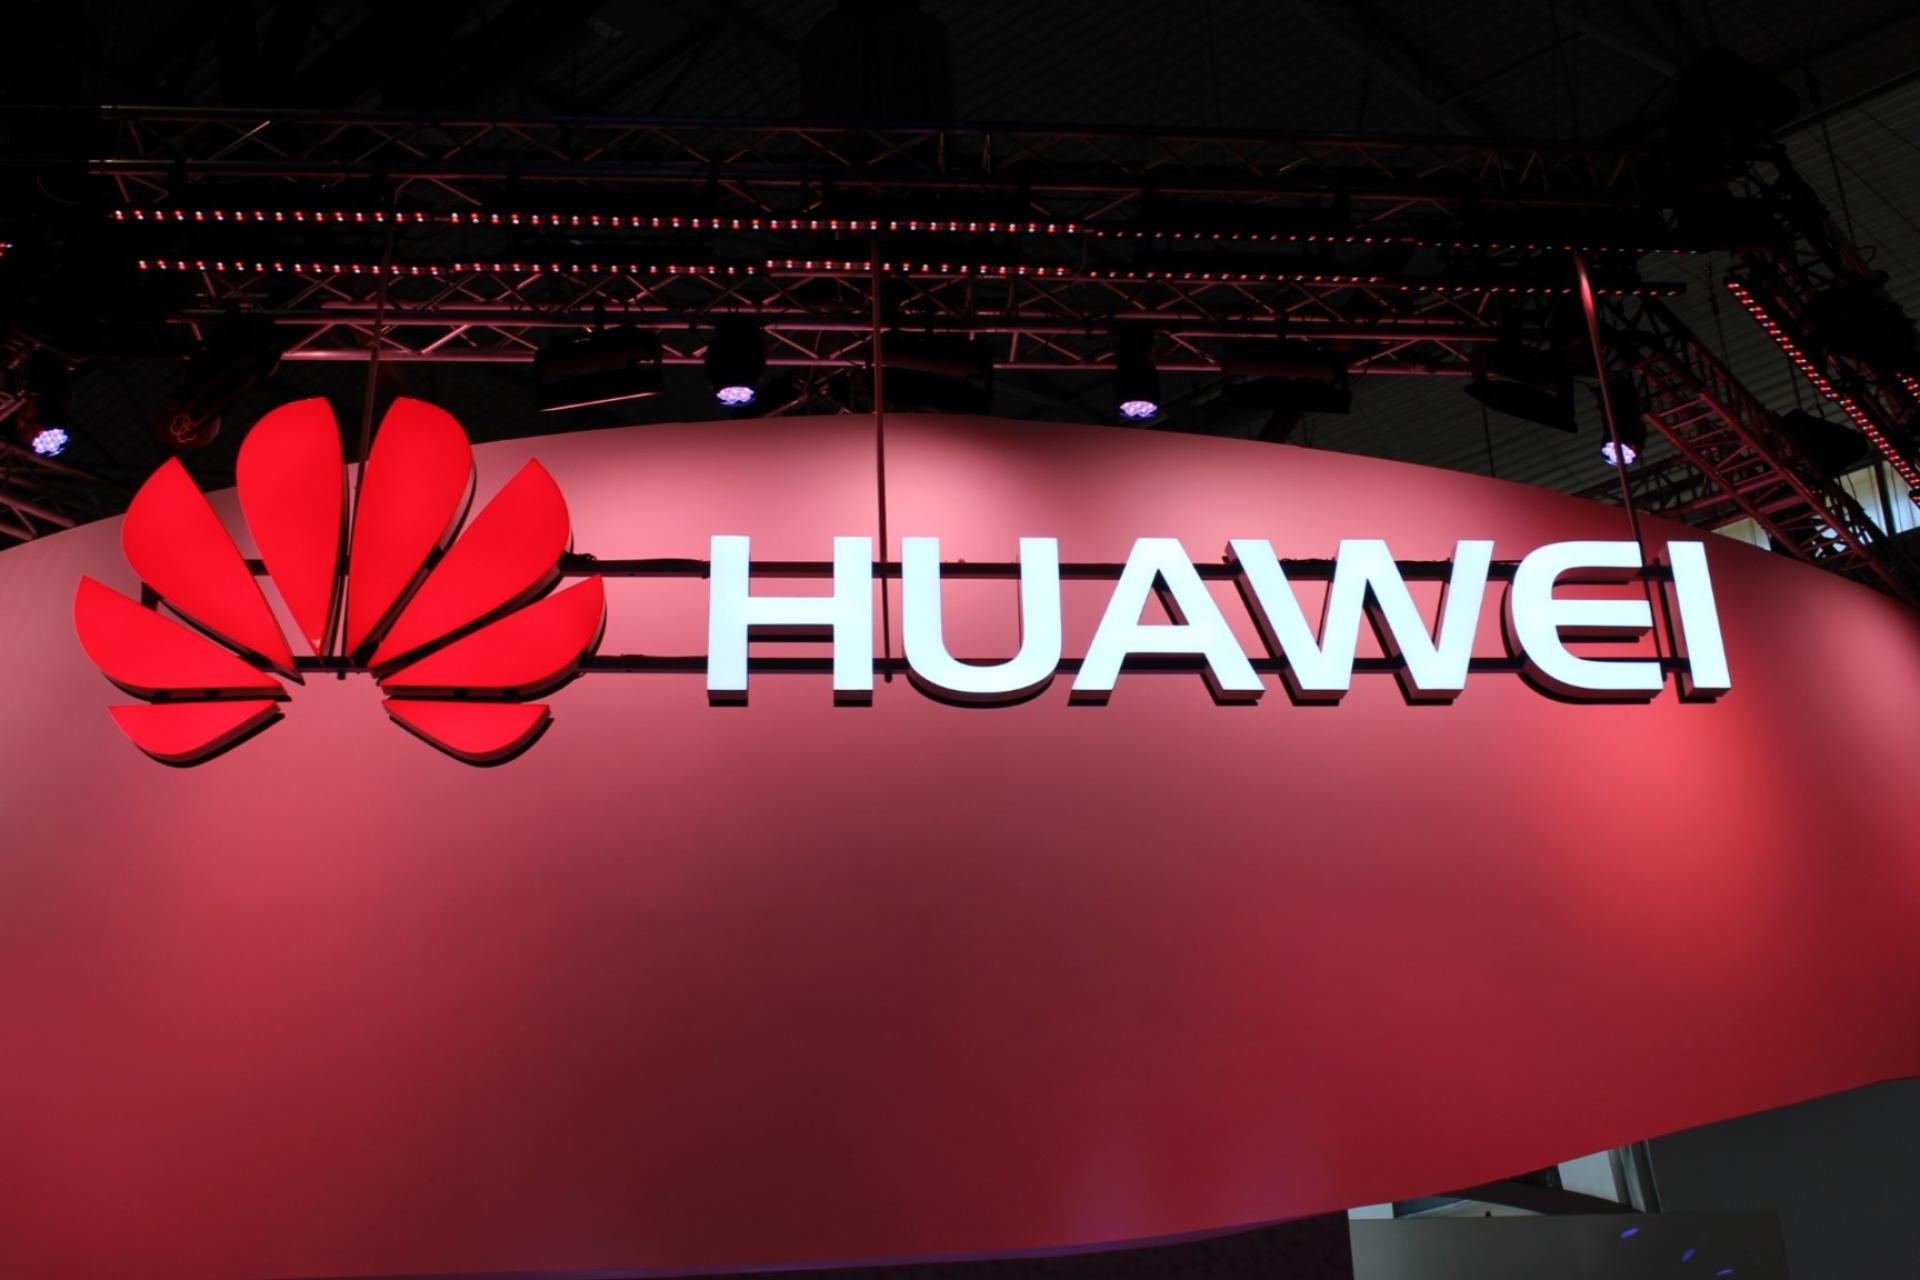 Huawei logo, First 5G smartphone, Q3 2019 launch, 1920x1280 HD Desktop